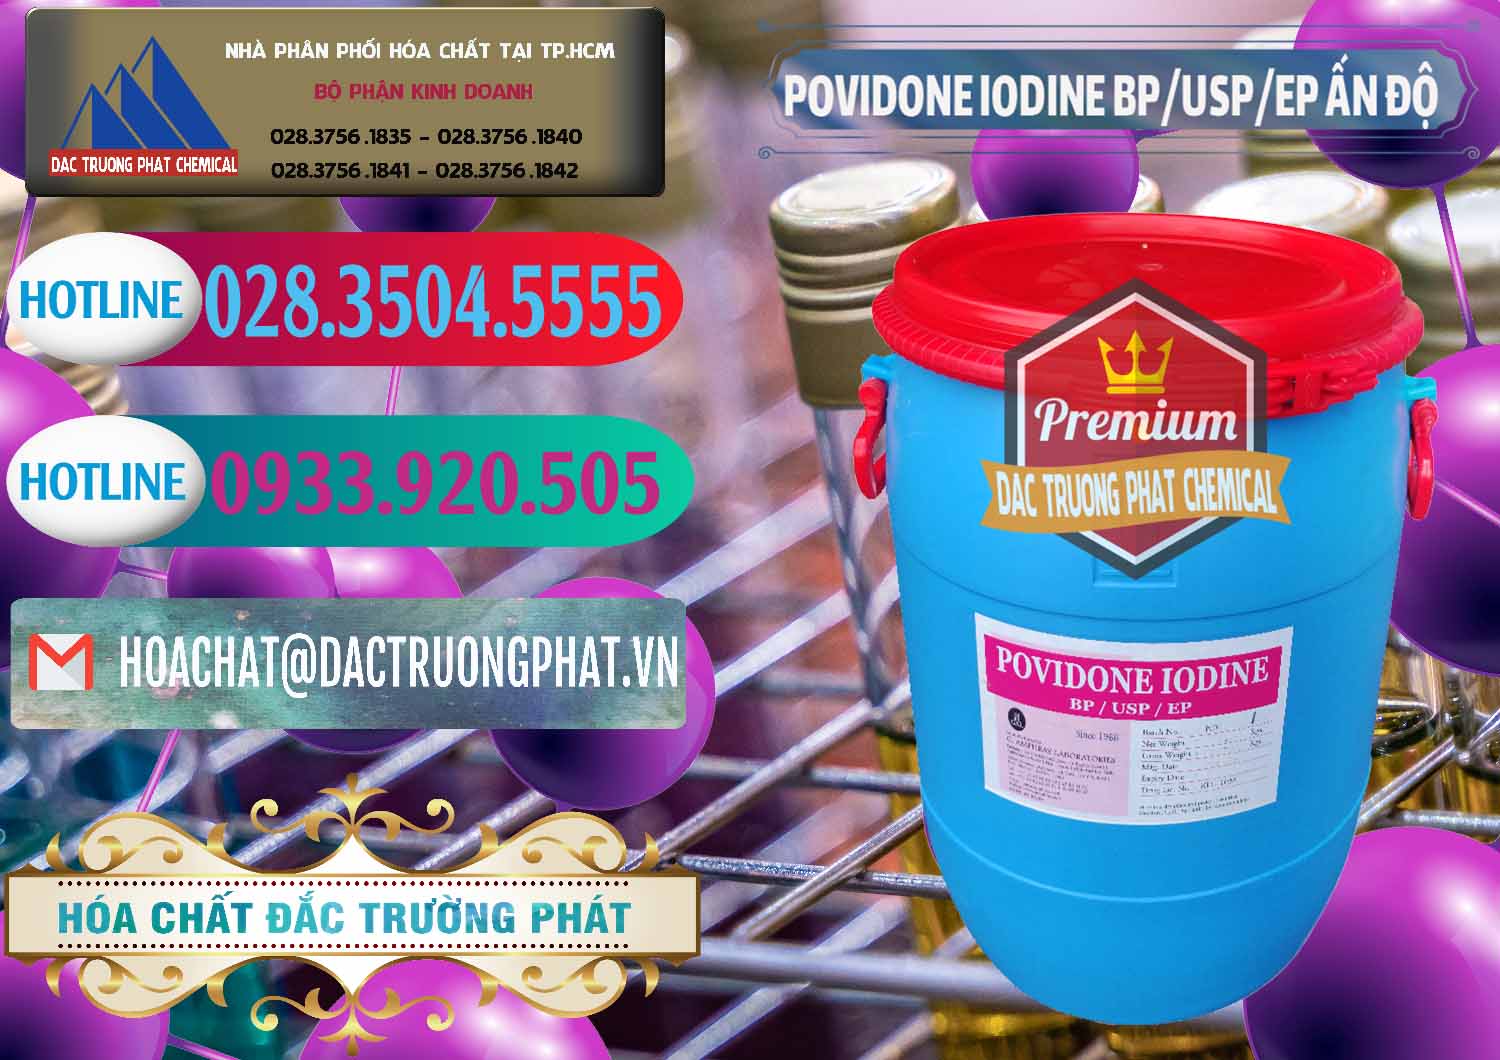 Cty phân phối & bán Povidone Iodine BP USP EP Ấn Độ India - 0318 - Công ty chuyên cung cấp - bán hóa chất tại TP.HCM - truongphat.vn